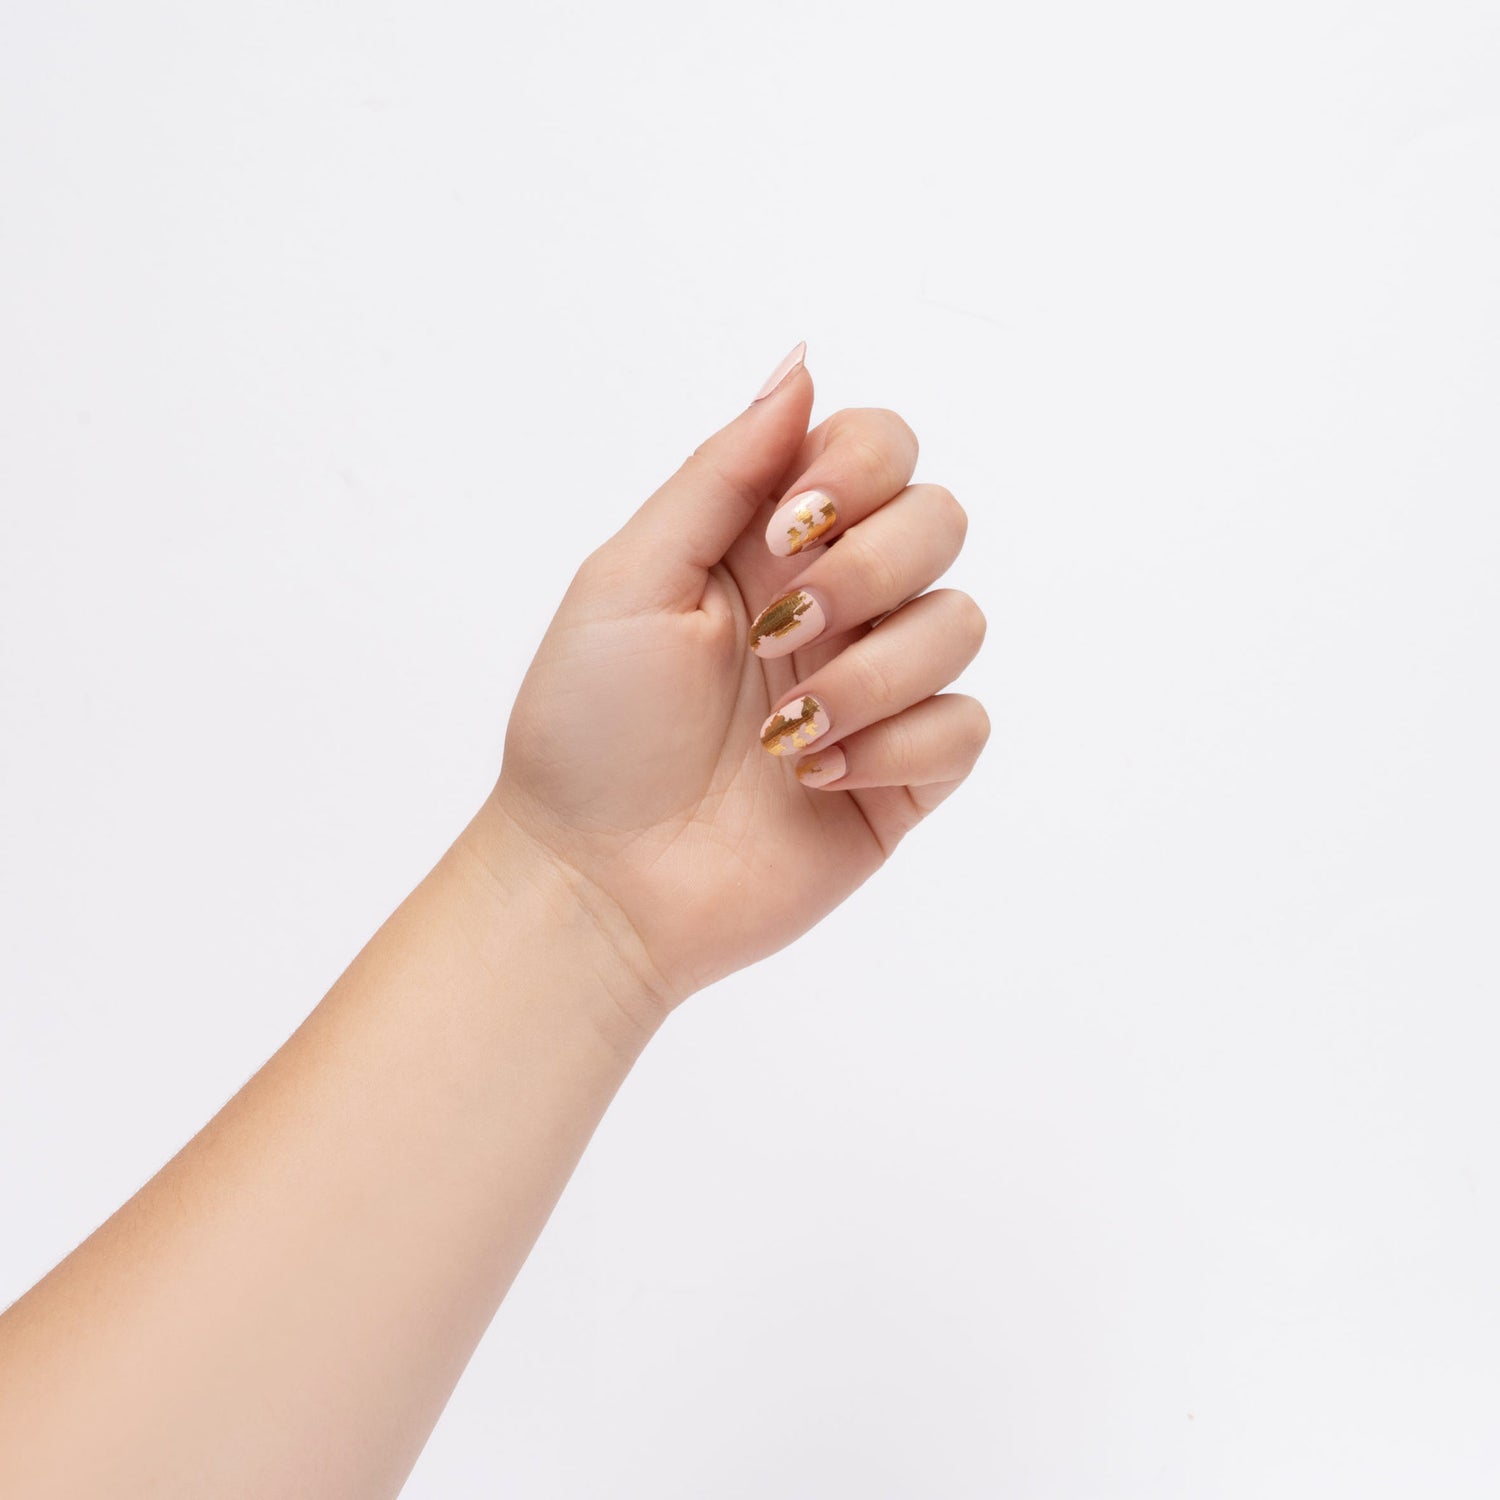 Bendaggi per unghie - Marmo rosa e oro